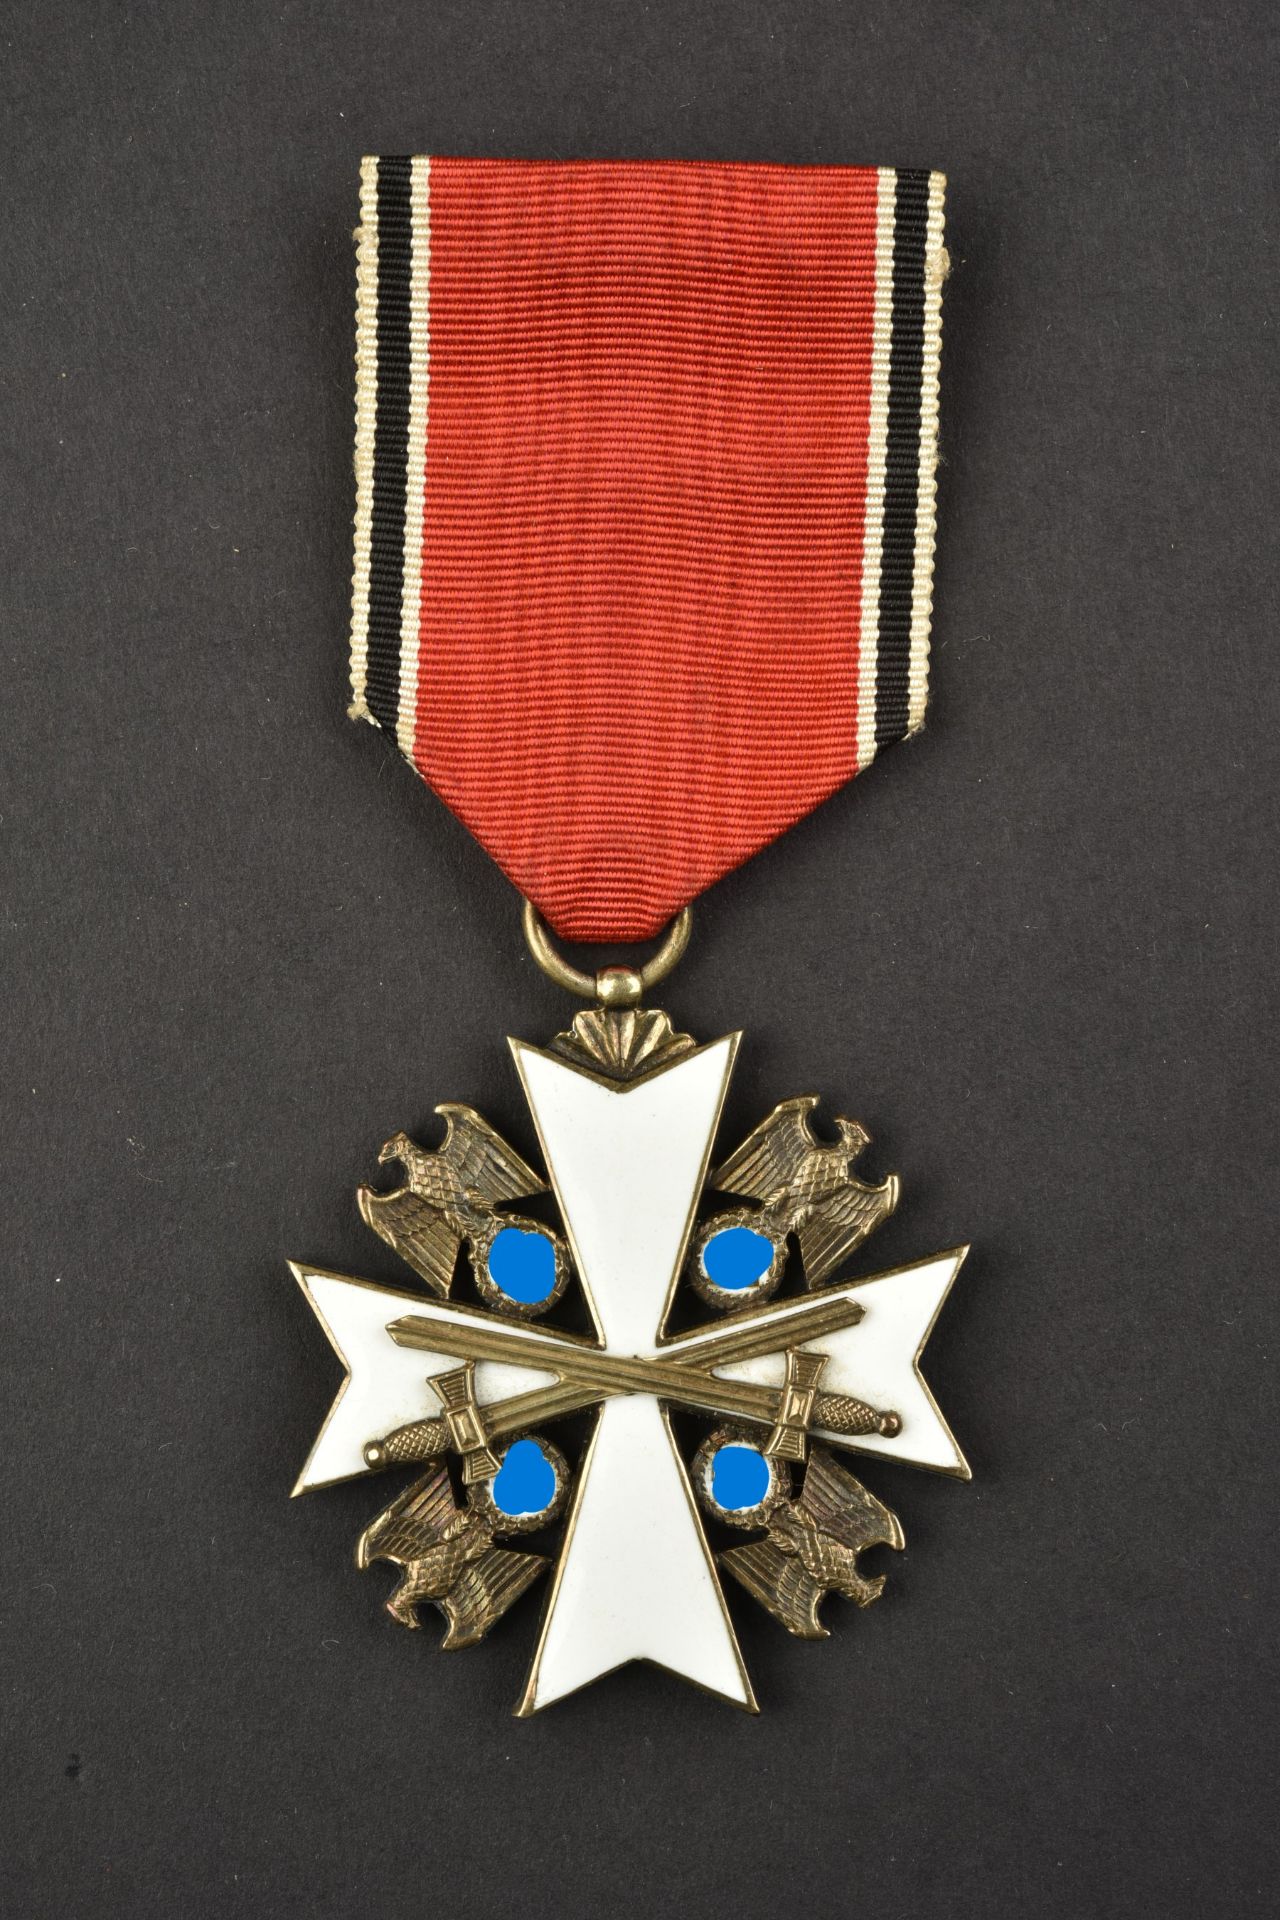 Medaille Deutsche Adler. Deutsche Adler medals. - Image 2 of 8